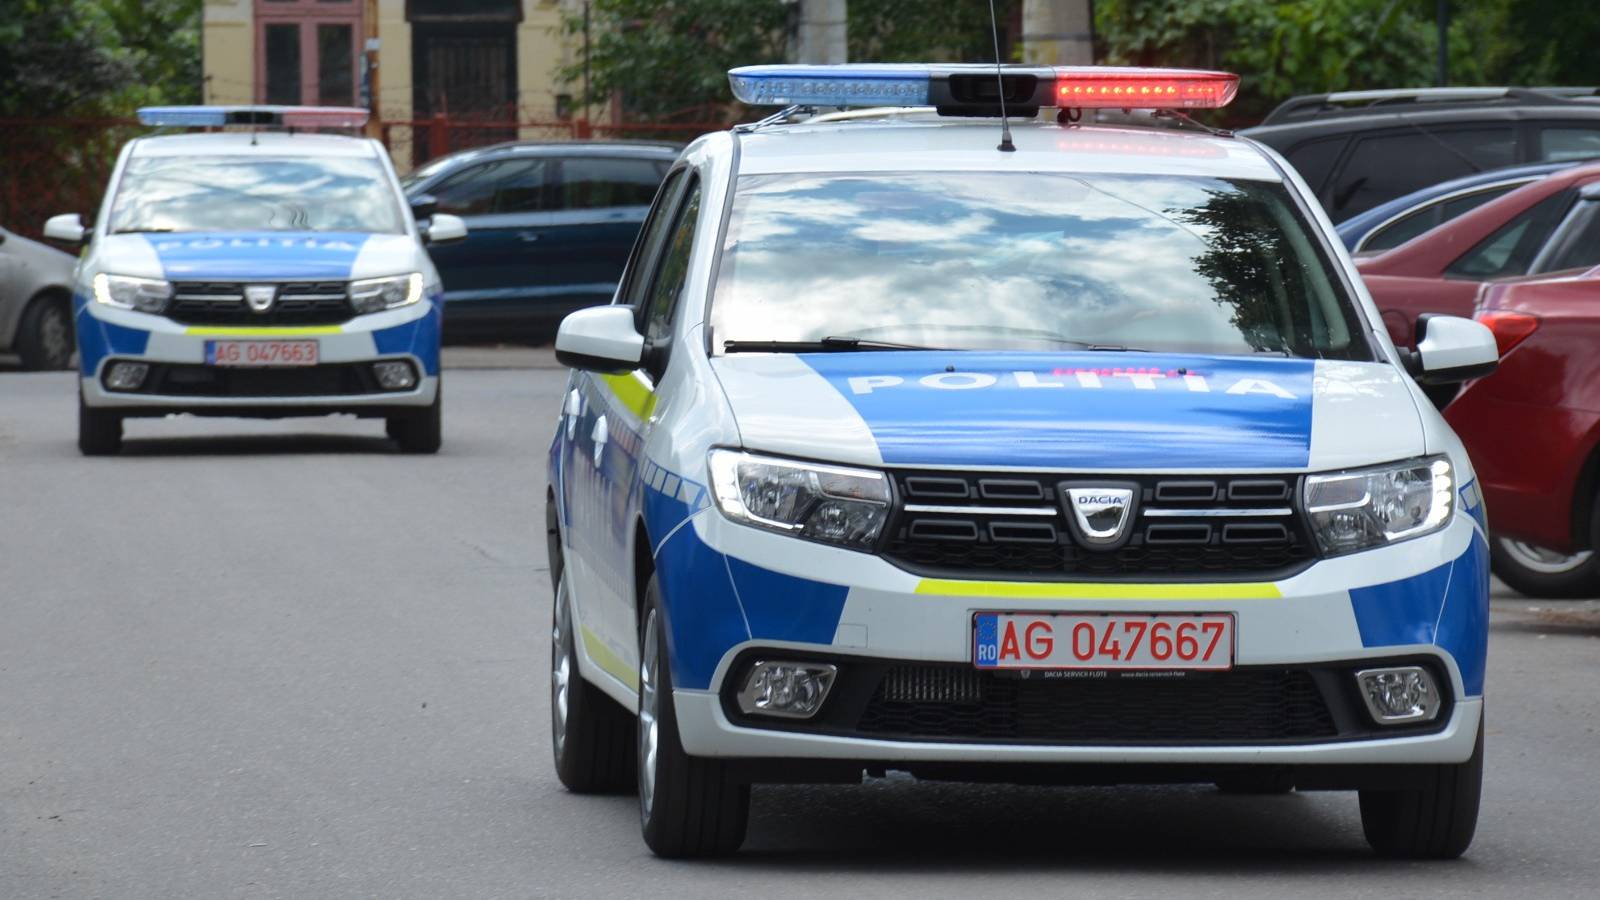 Rumuńska policja ostrzega w sprawie ciągników na drogach publicznych